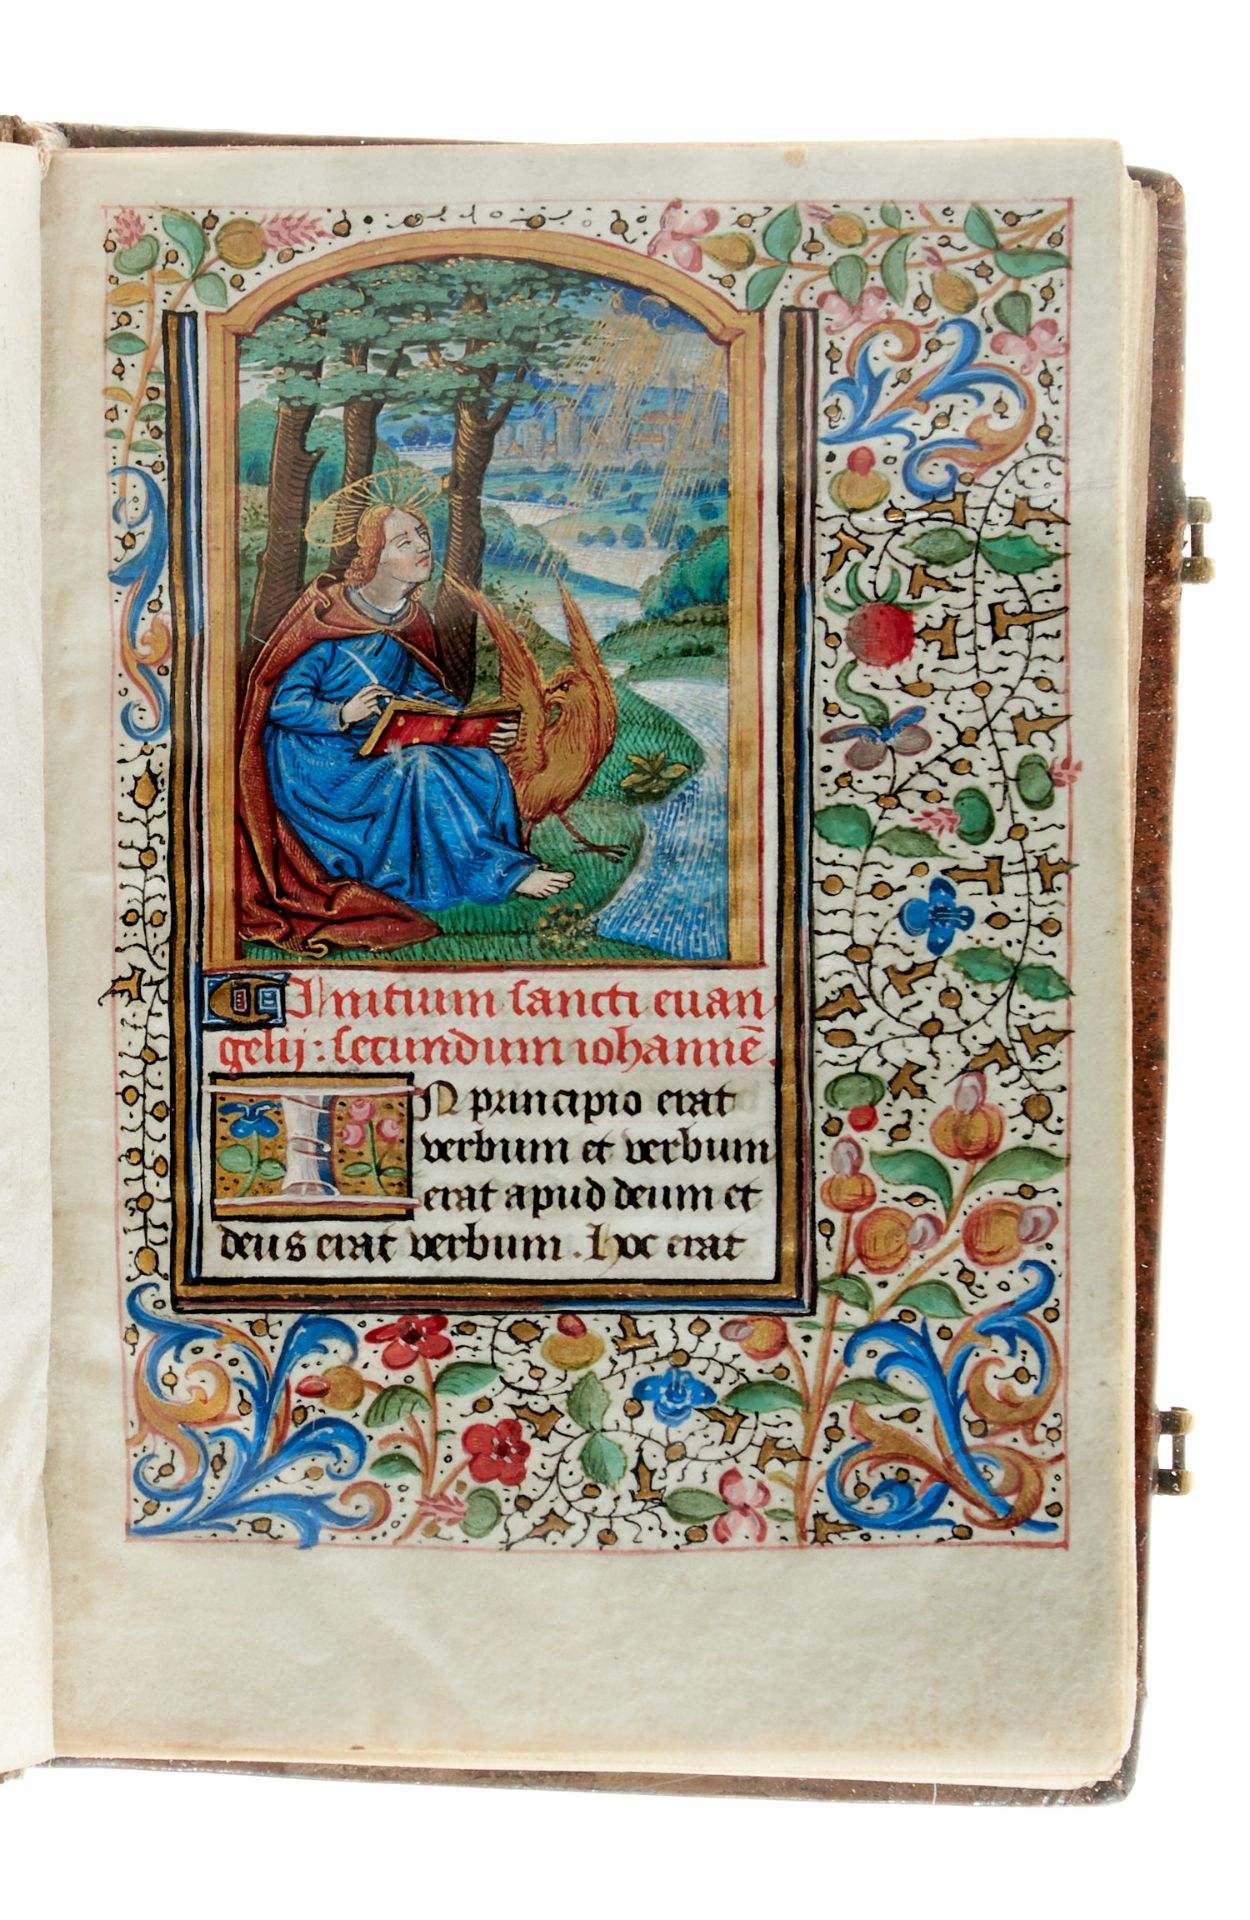 Pariser Stundenbuch. Lateinische Handschrift auf Pergament. Paris, um 1500. Ca. 14 x 10 cm. - Bild 2 aus 26